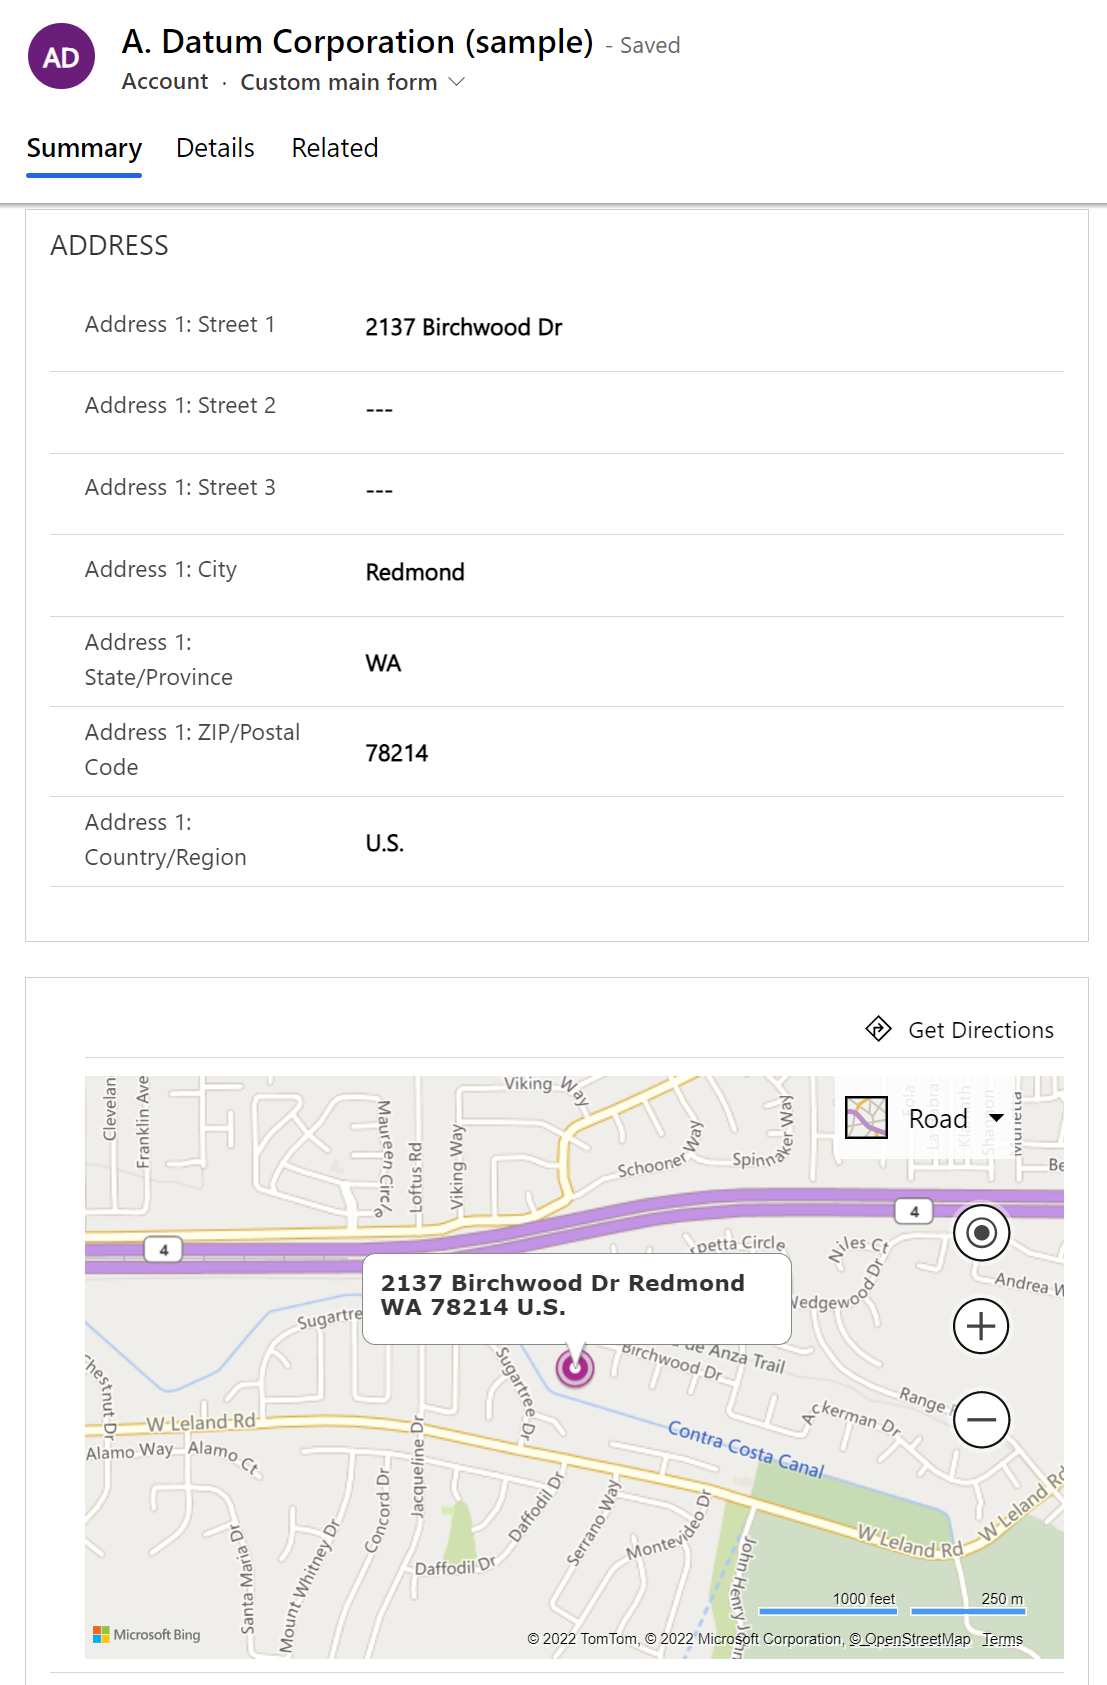 Control Mapa de Bing en una aplicación.